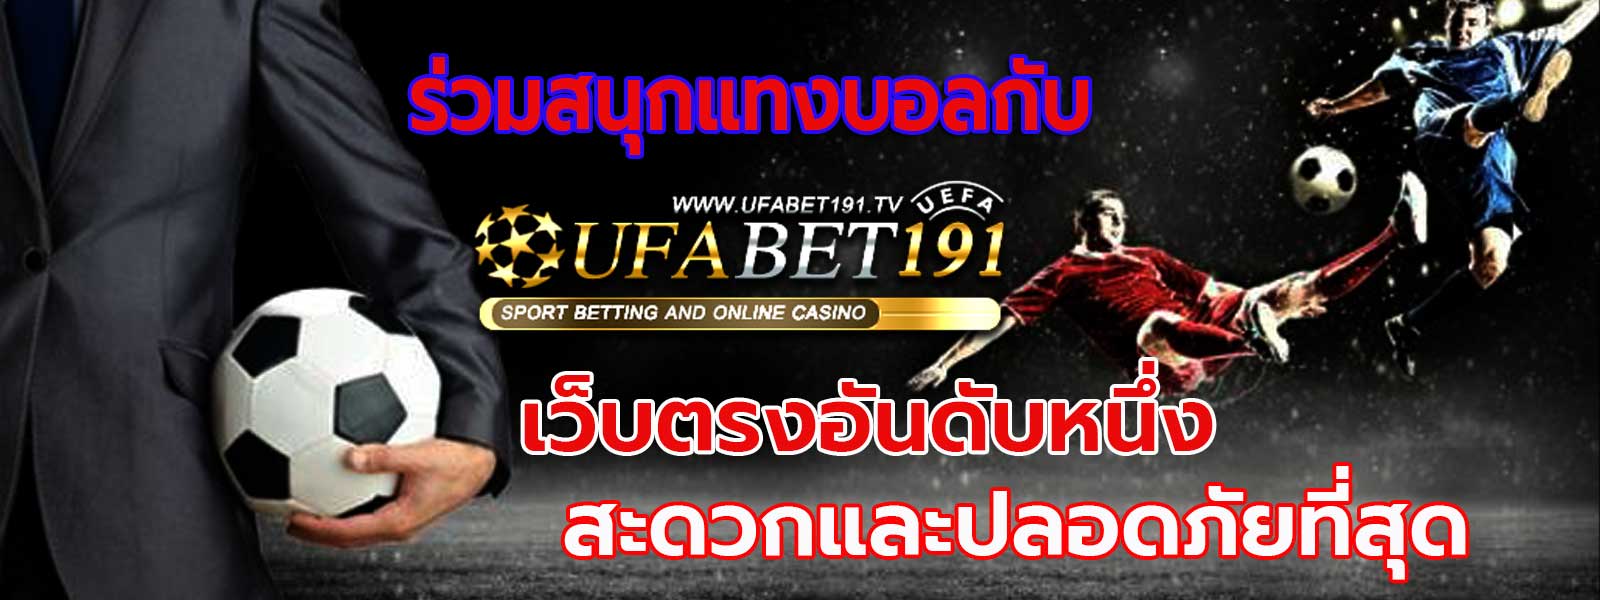 ufabet ลิขสิทธิ์แท้ 1 เดียวในไทย